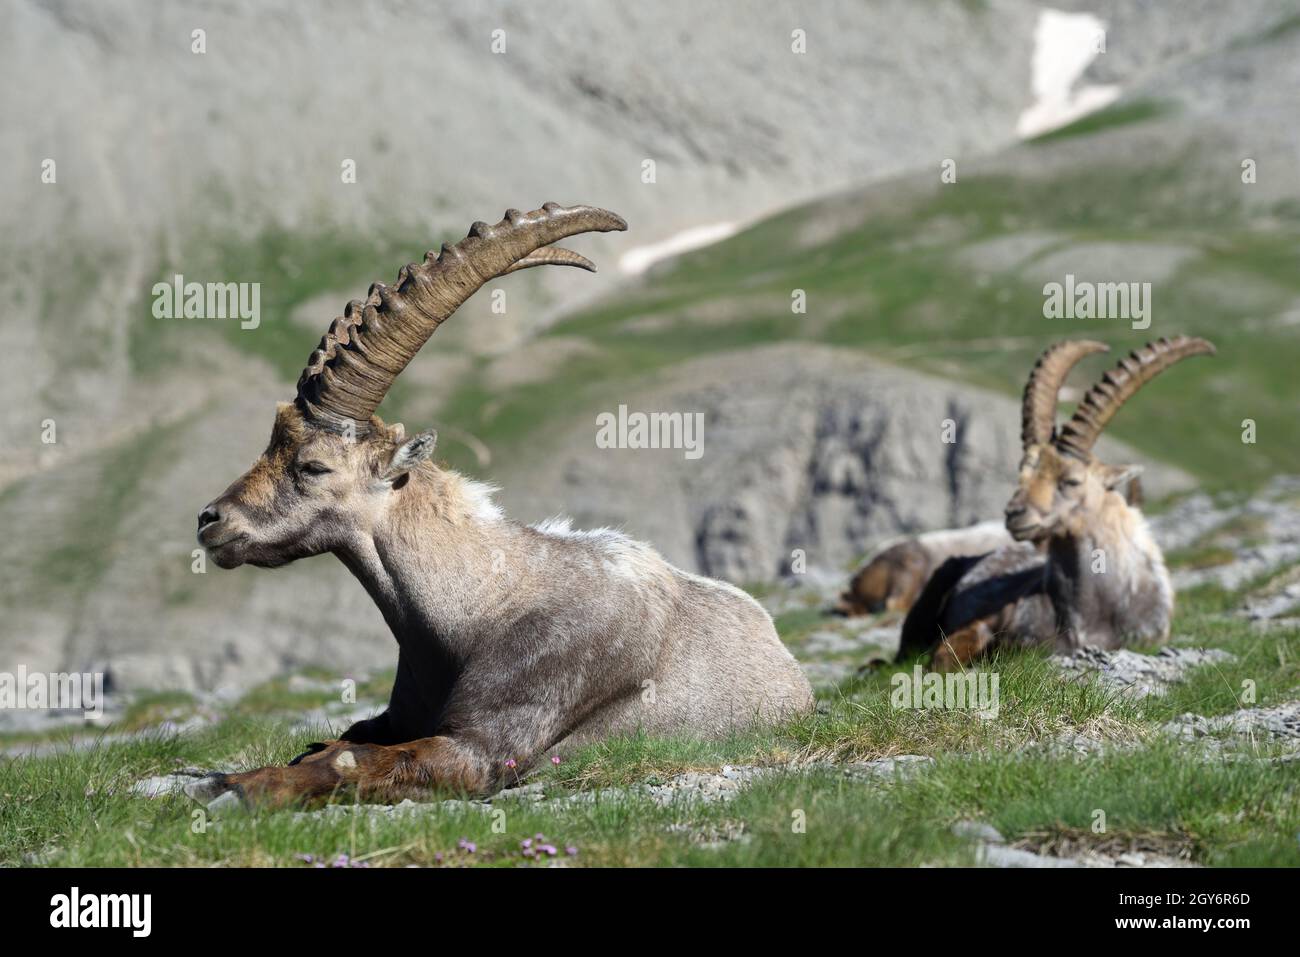 L'Ibex alpin masculin, le Capra Ibex, et le groupe d'ibexes, une forme de Goat sauvage, s'assoient sur des pentes rocheuses dans le parc national du Mercantour dans les Alpes françaises Banque D'Images